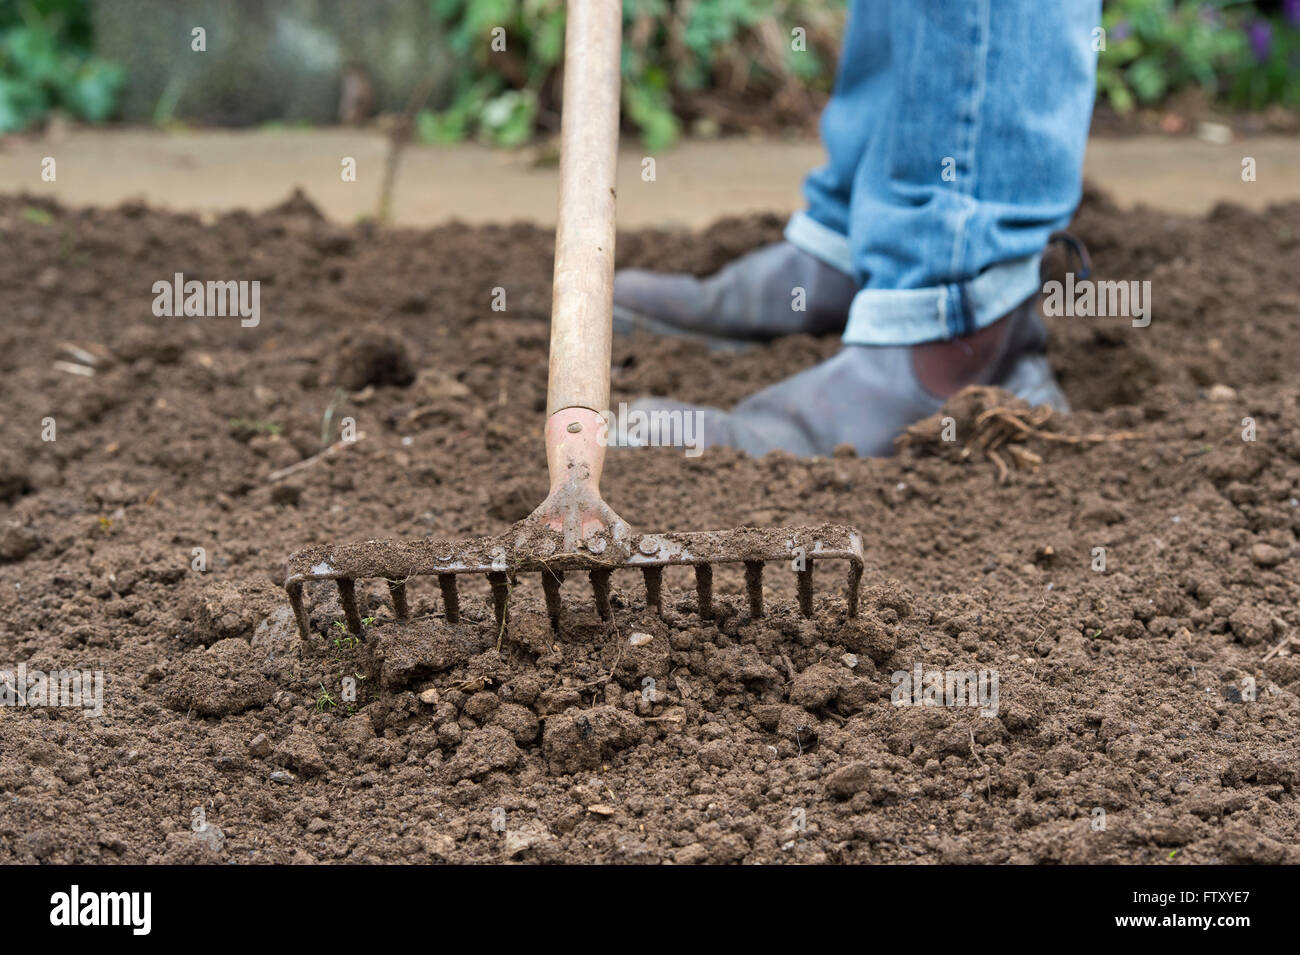 Gardener raking the soil preparing vegetable beds in spring. UK Stock Photo